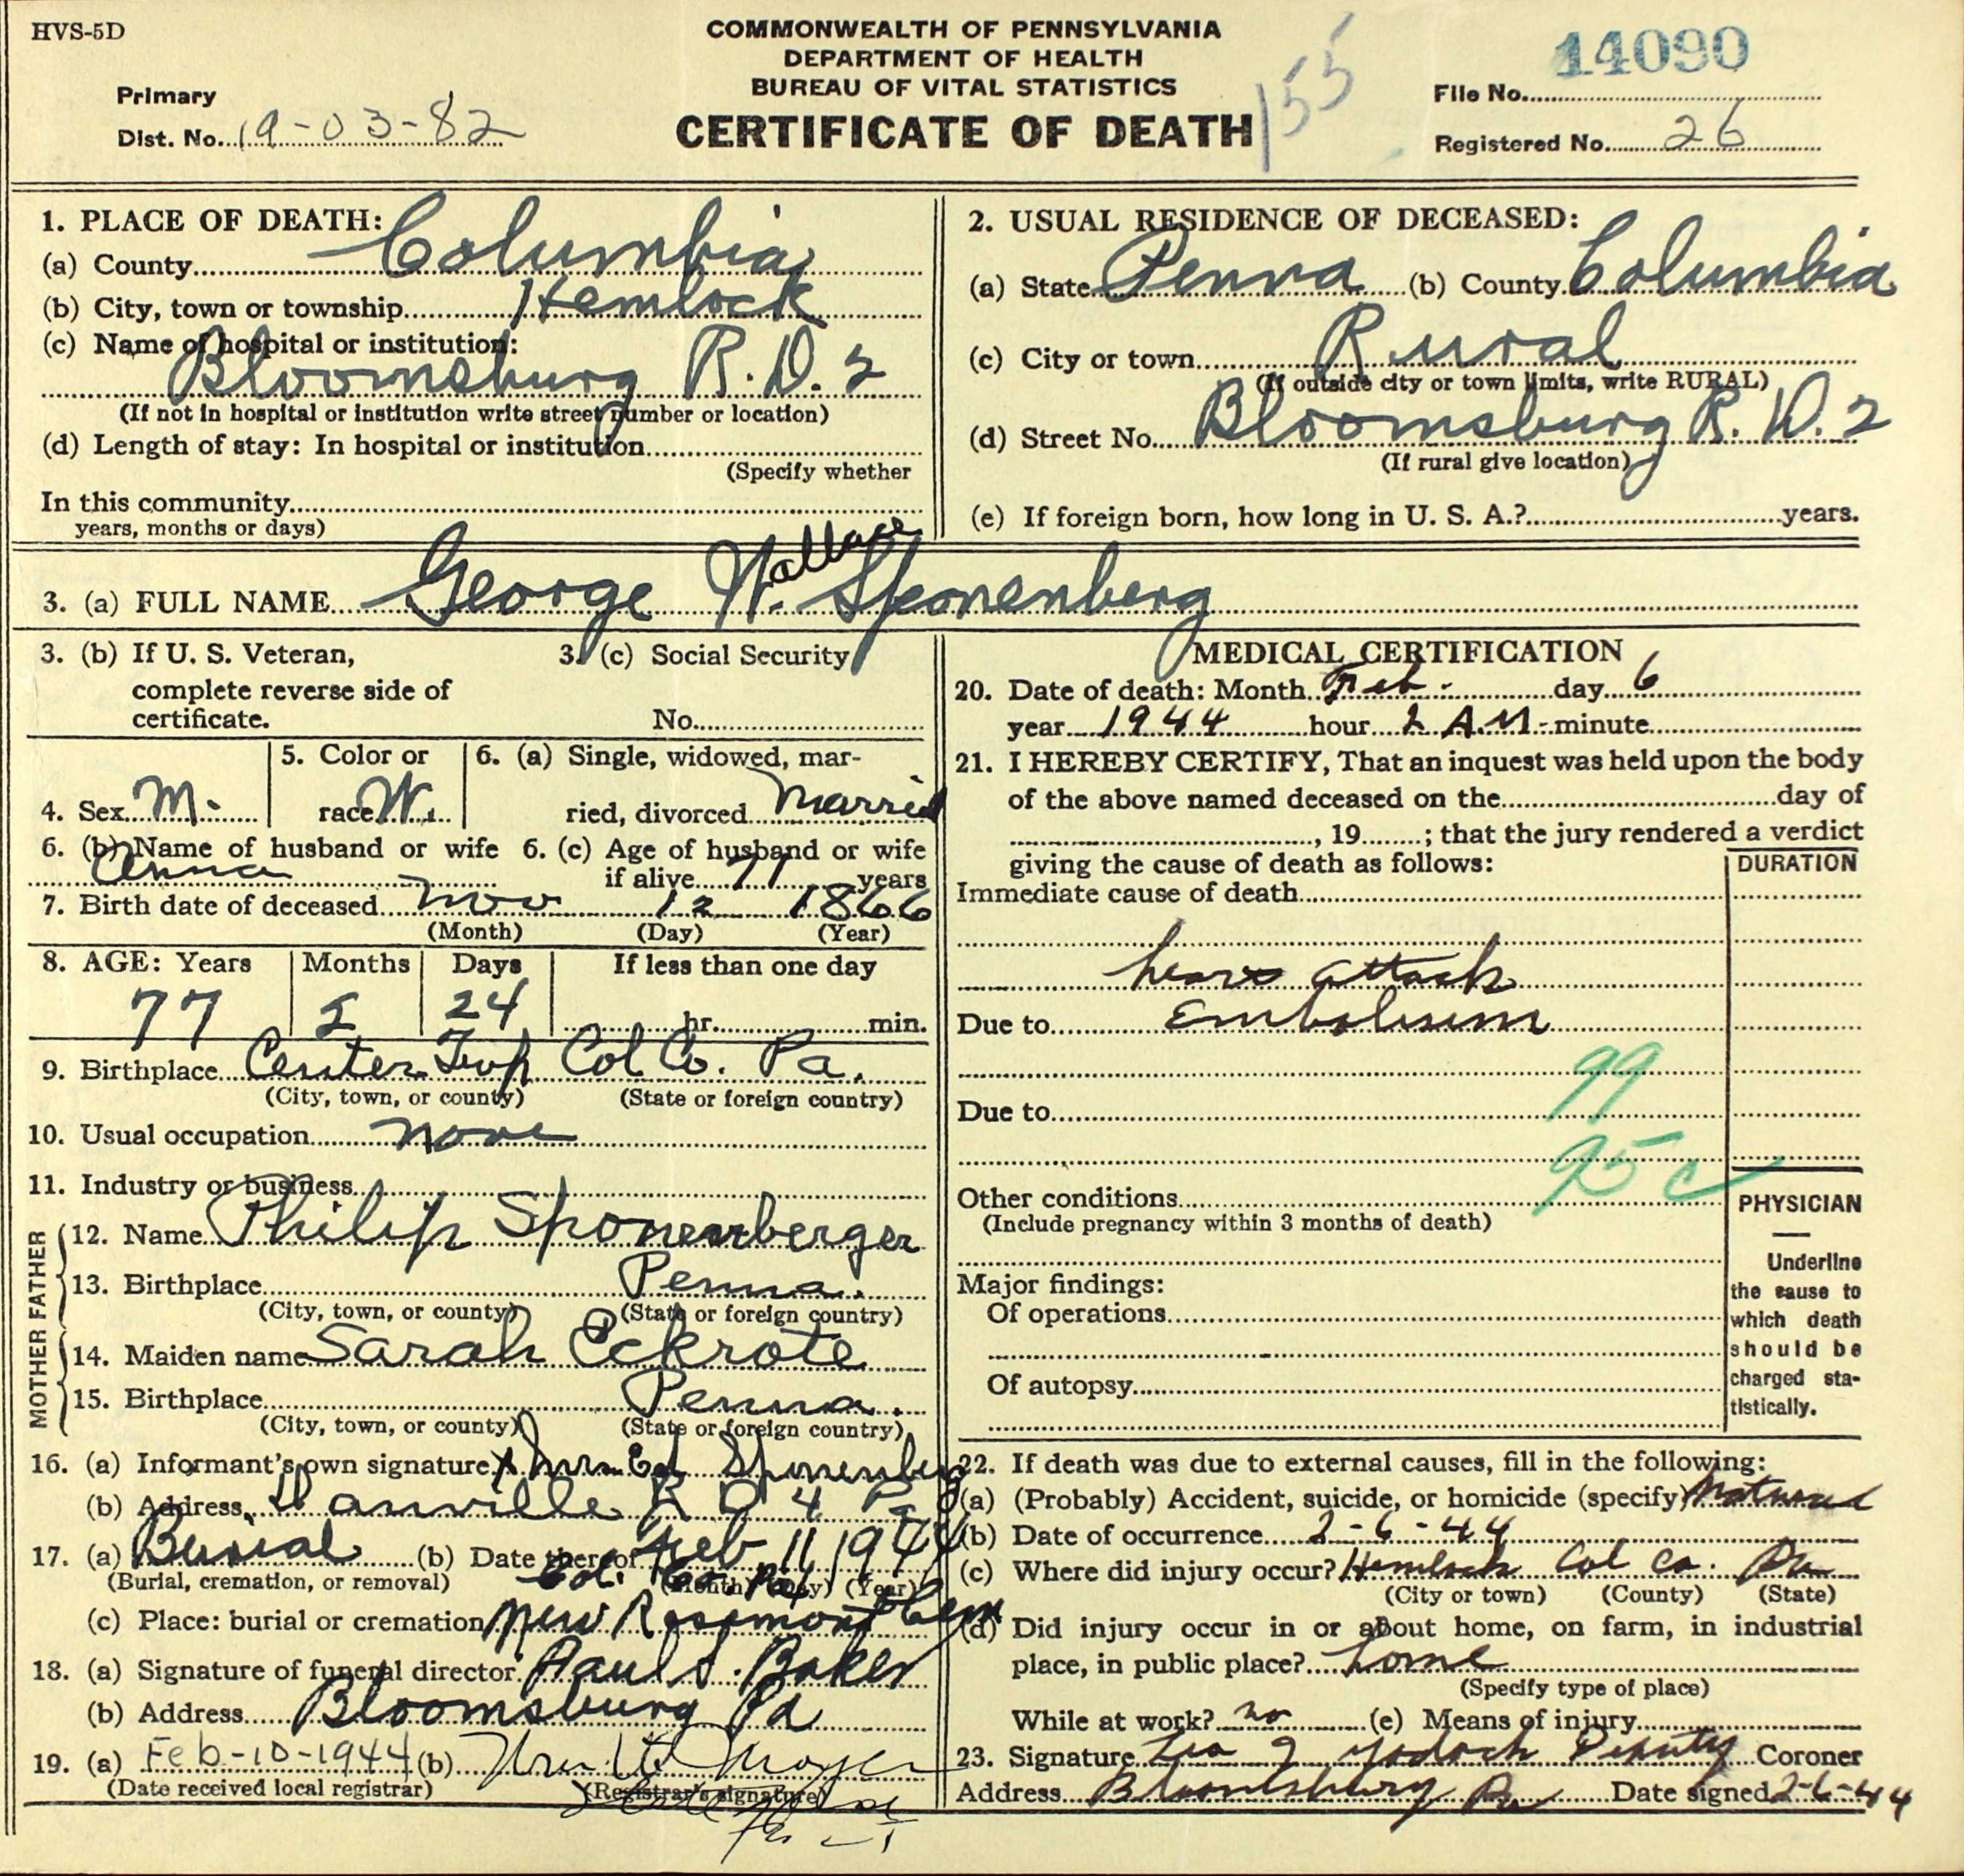 George Wallace Sponenberg death certificate